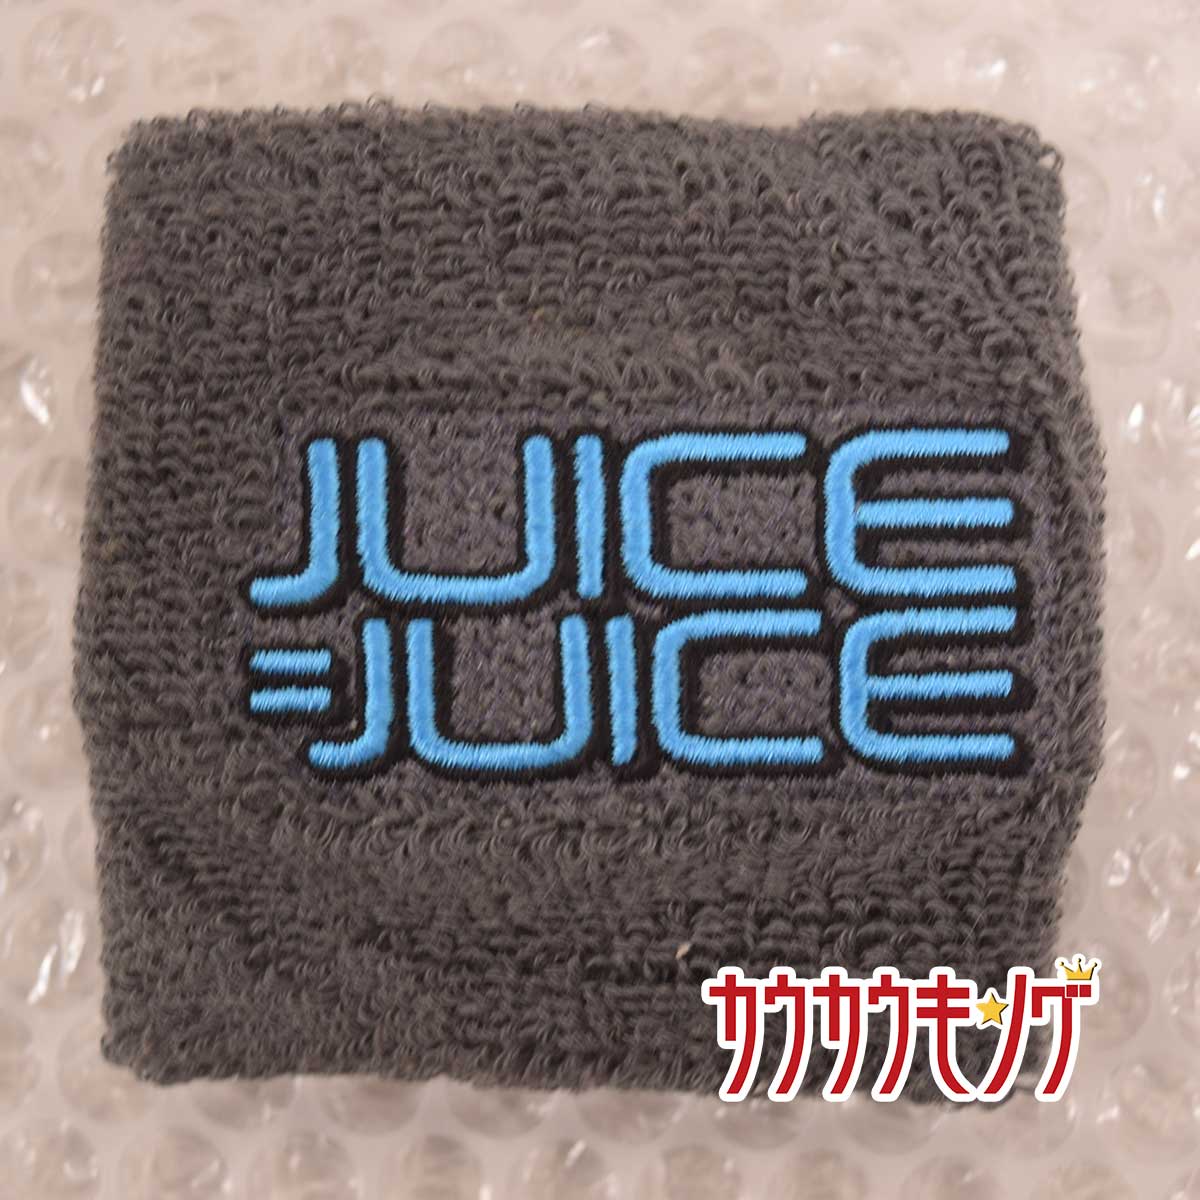 【中古】ジュース・ジュース/JUICE JUICE リストバンド